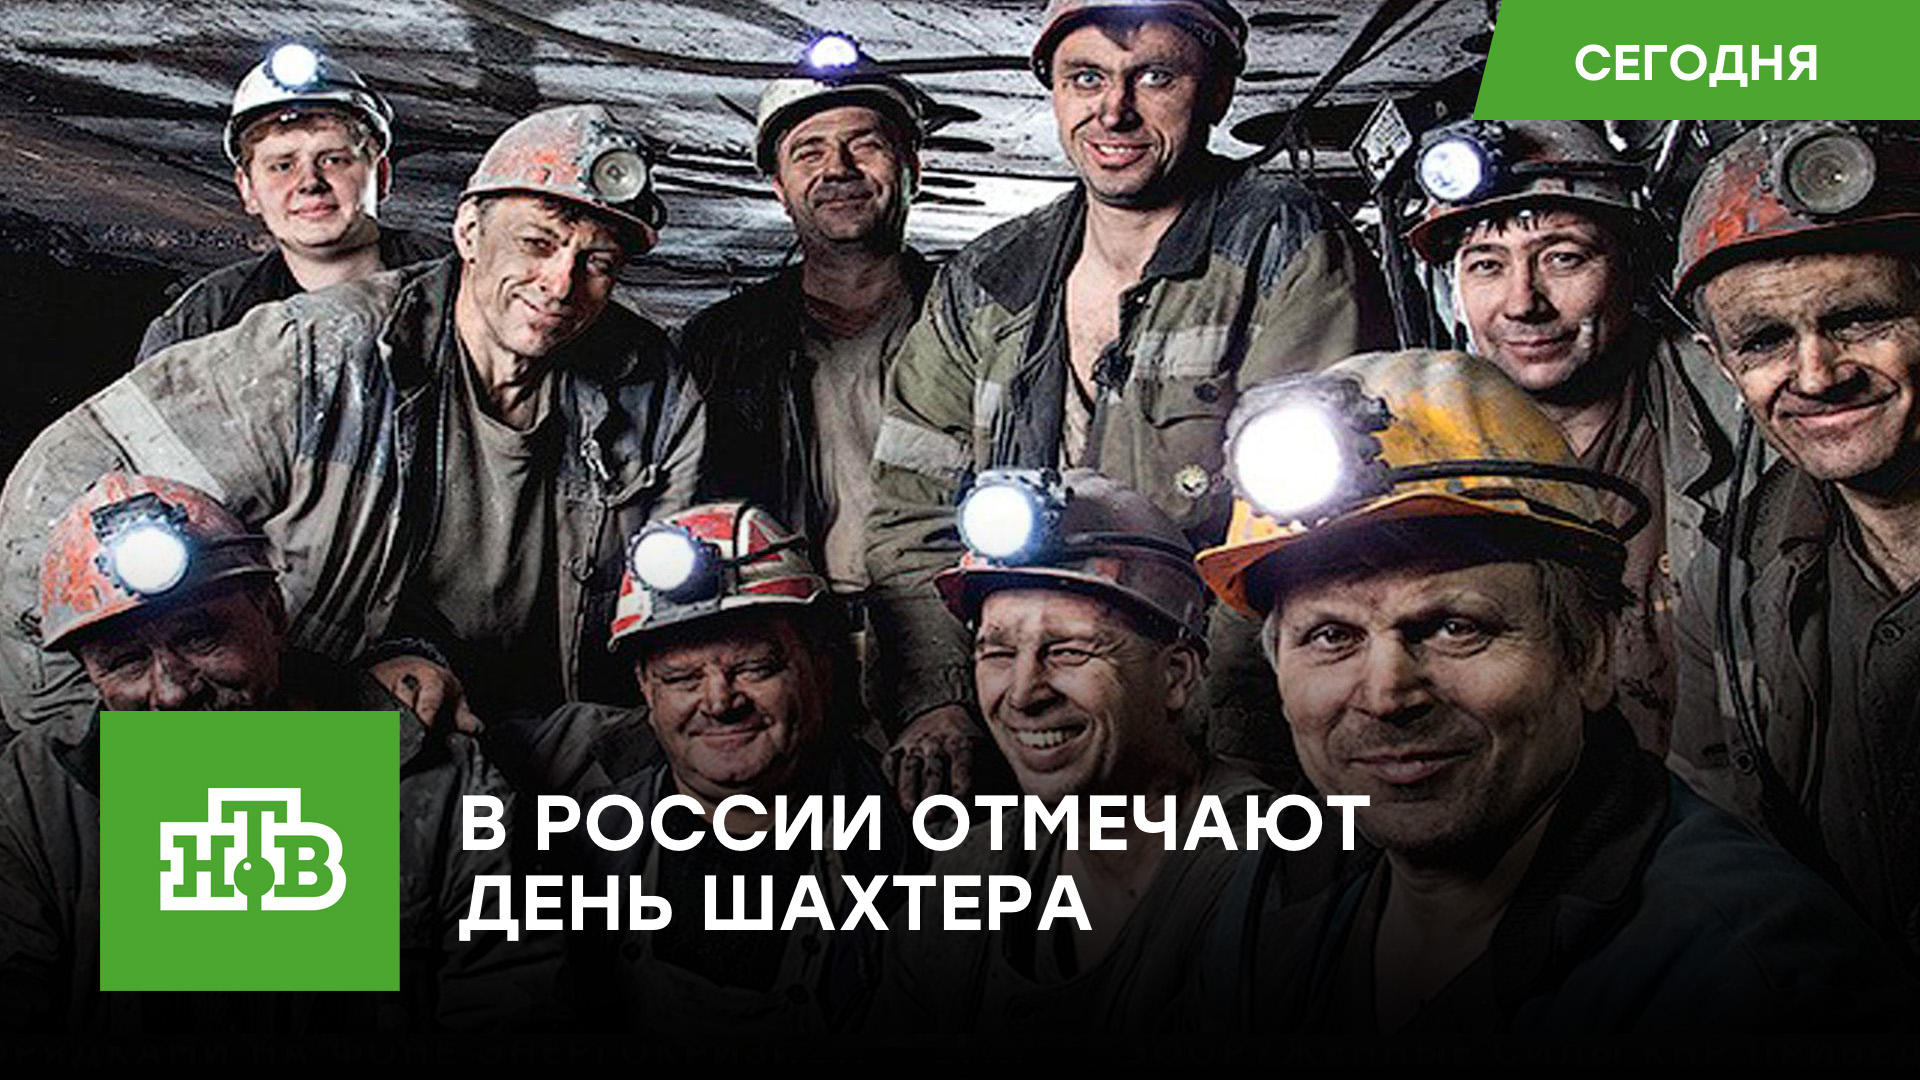 Объединяющий поколения праздник: в России отмечают День шахтера